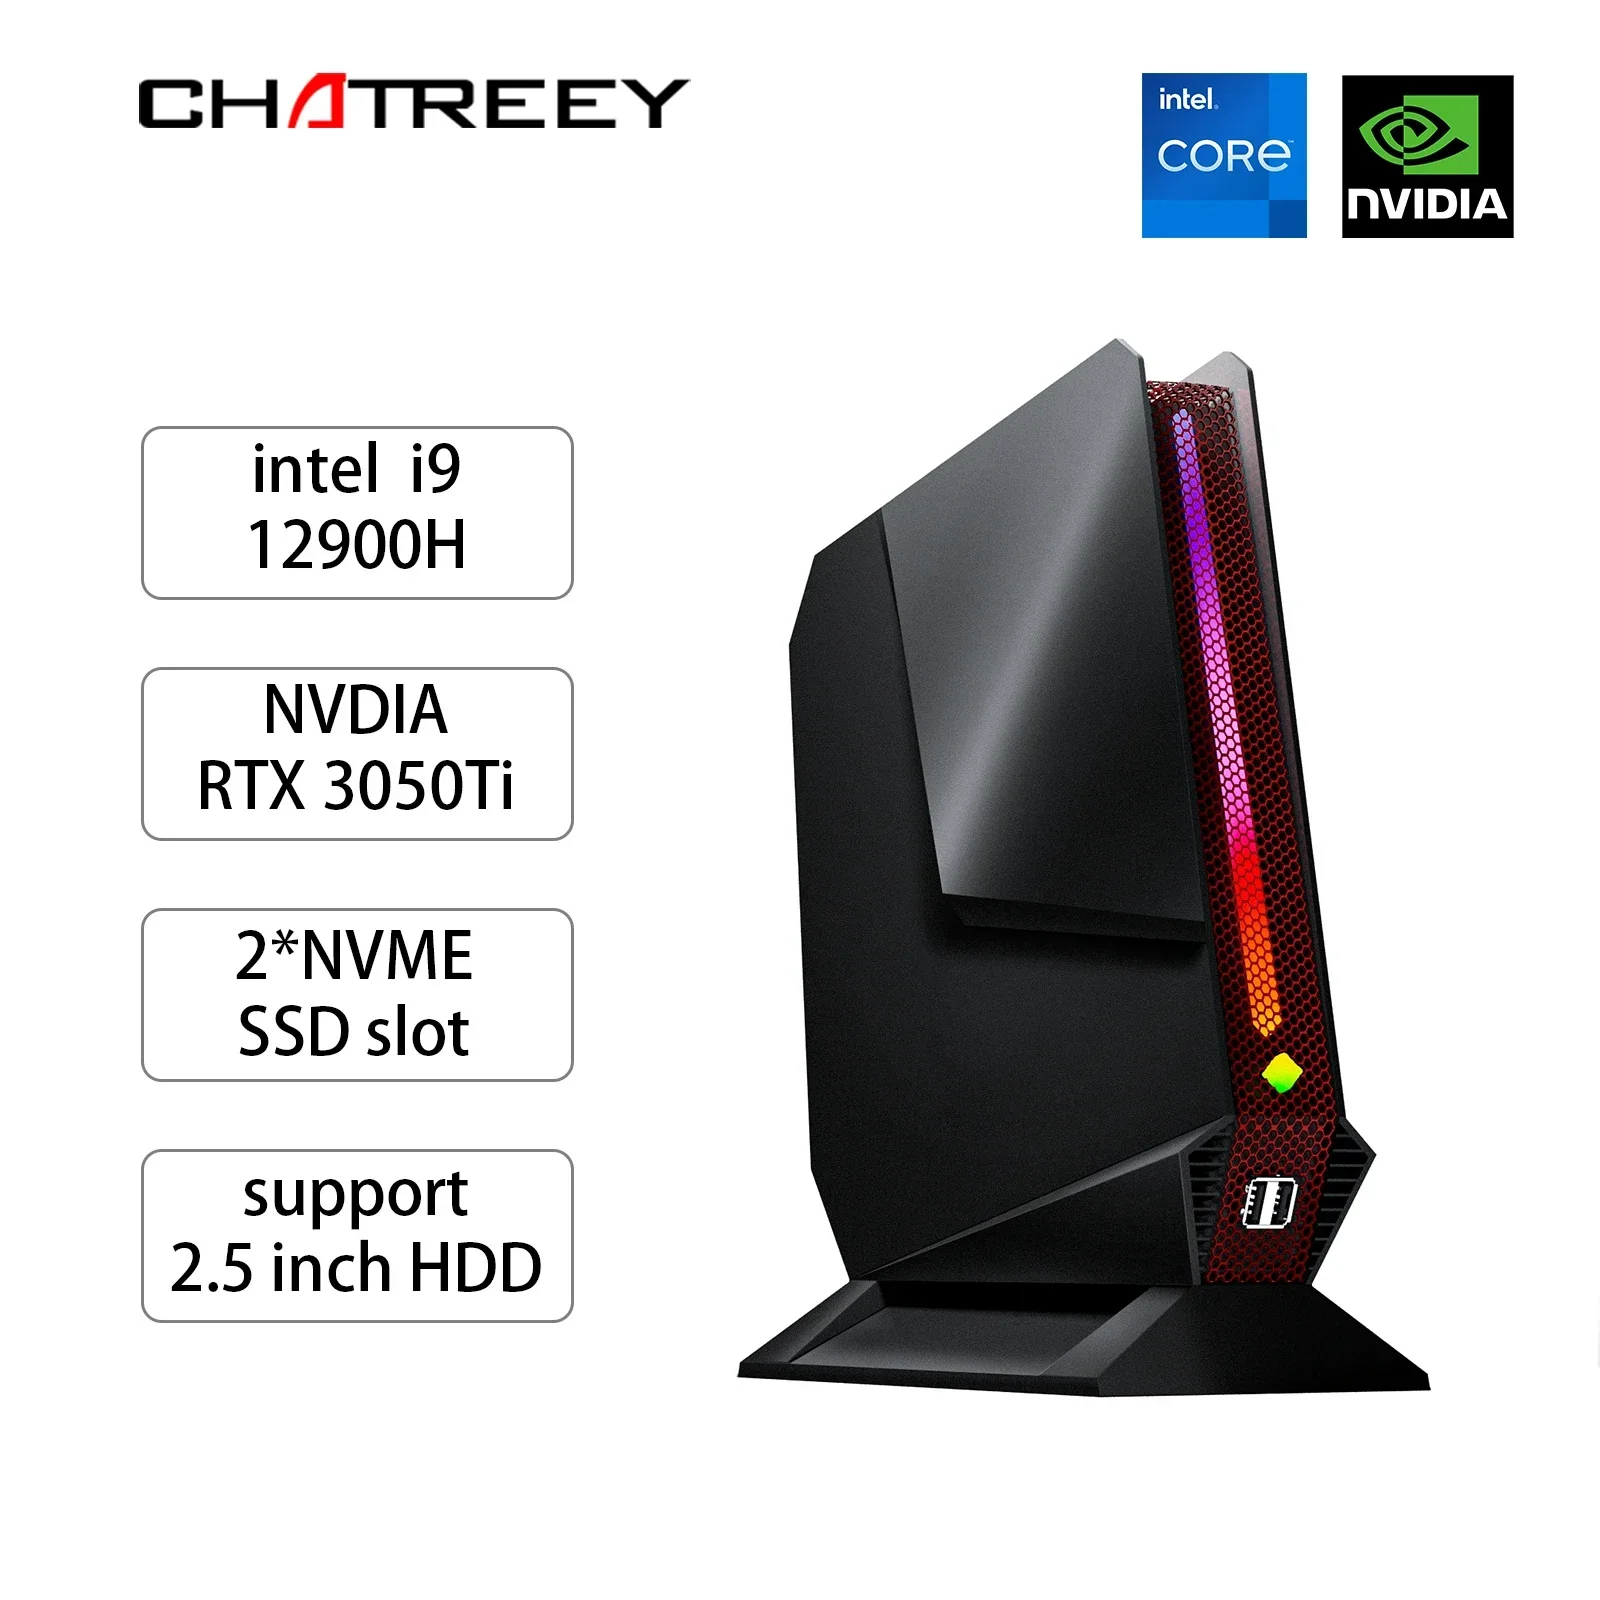 Chatreey G2 Mini PC